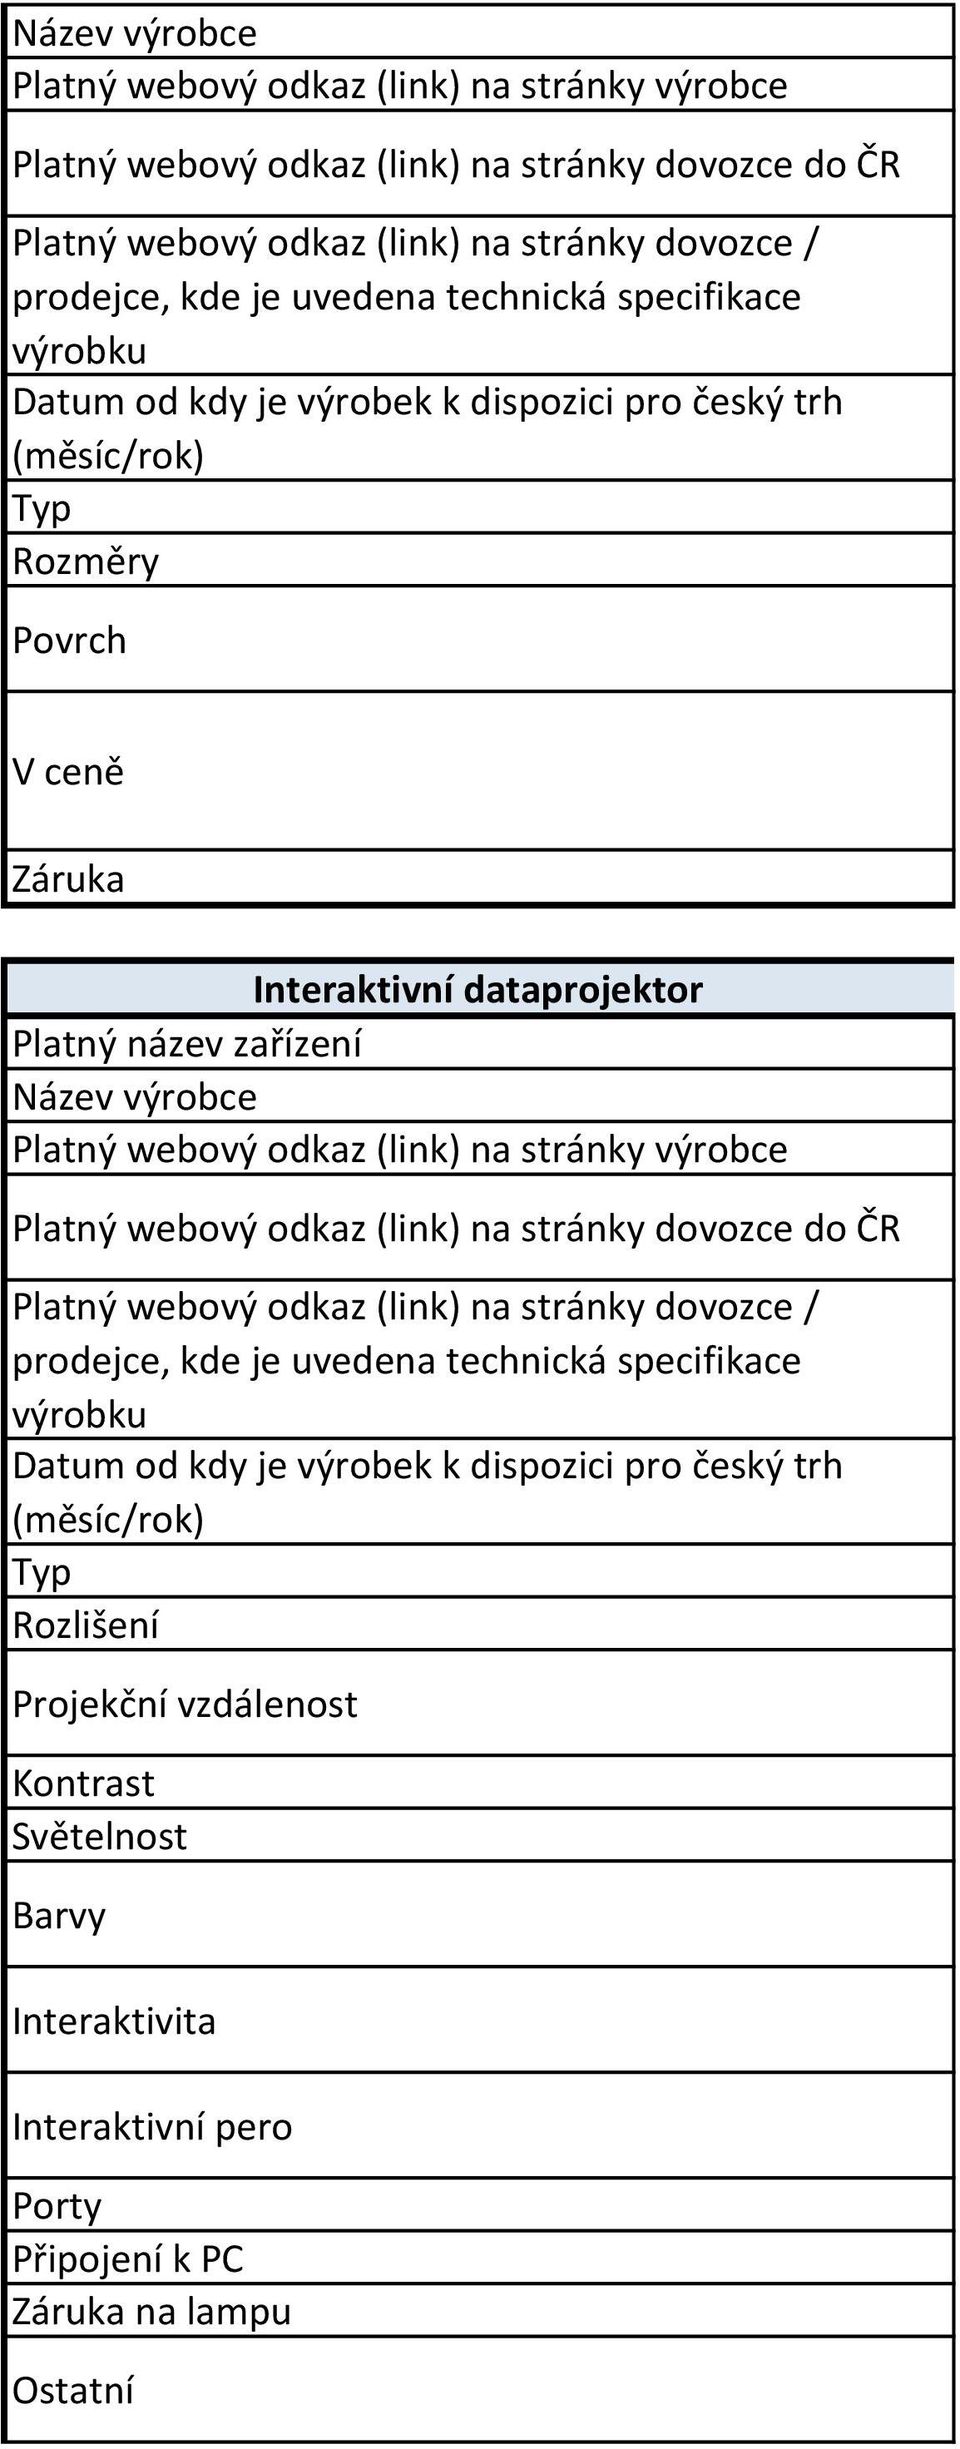 specifikace výrobku Datum od kdy je výrobek k dispozici pro český trh (měsíc/rok) Typ Rozlišení Projekční vzdálenost Kontrast Světelnost Barvy Interaktivita Interaktivní pero Porty Připojení k